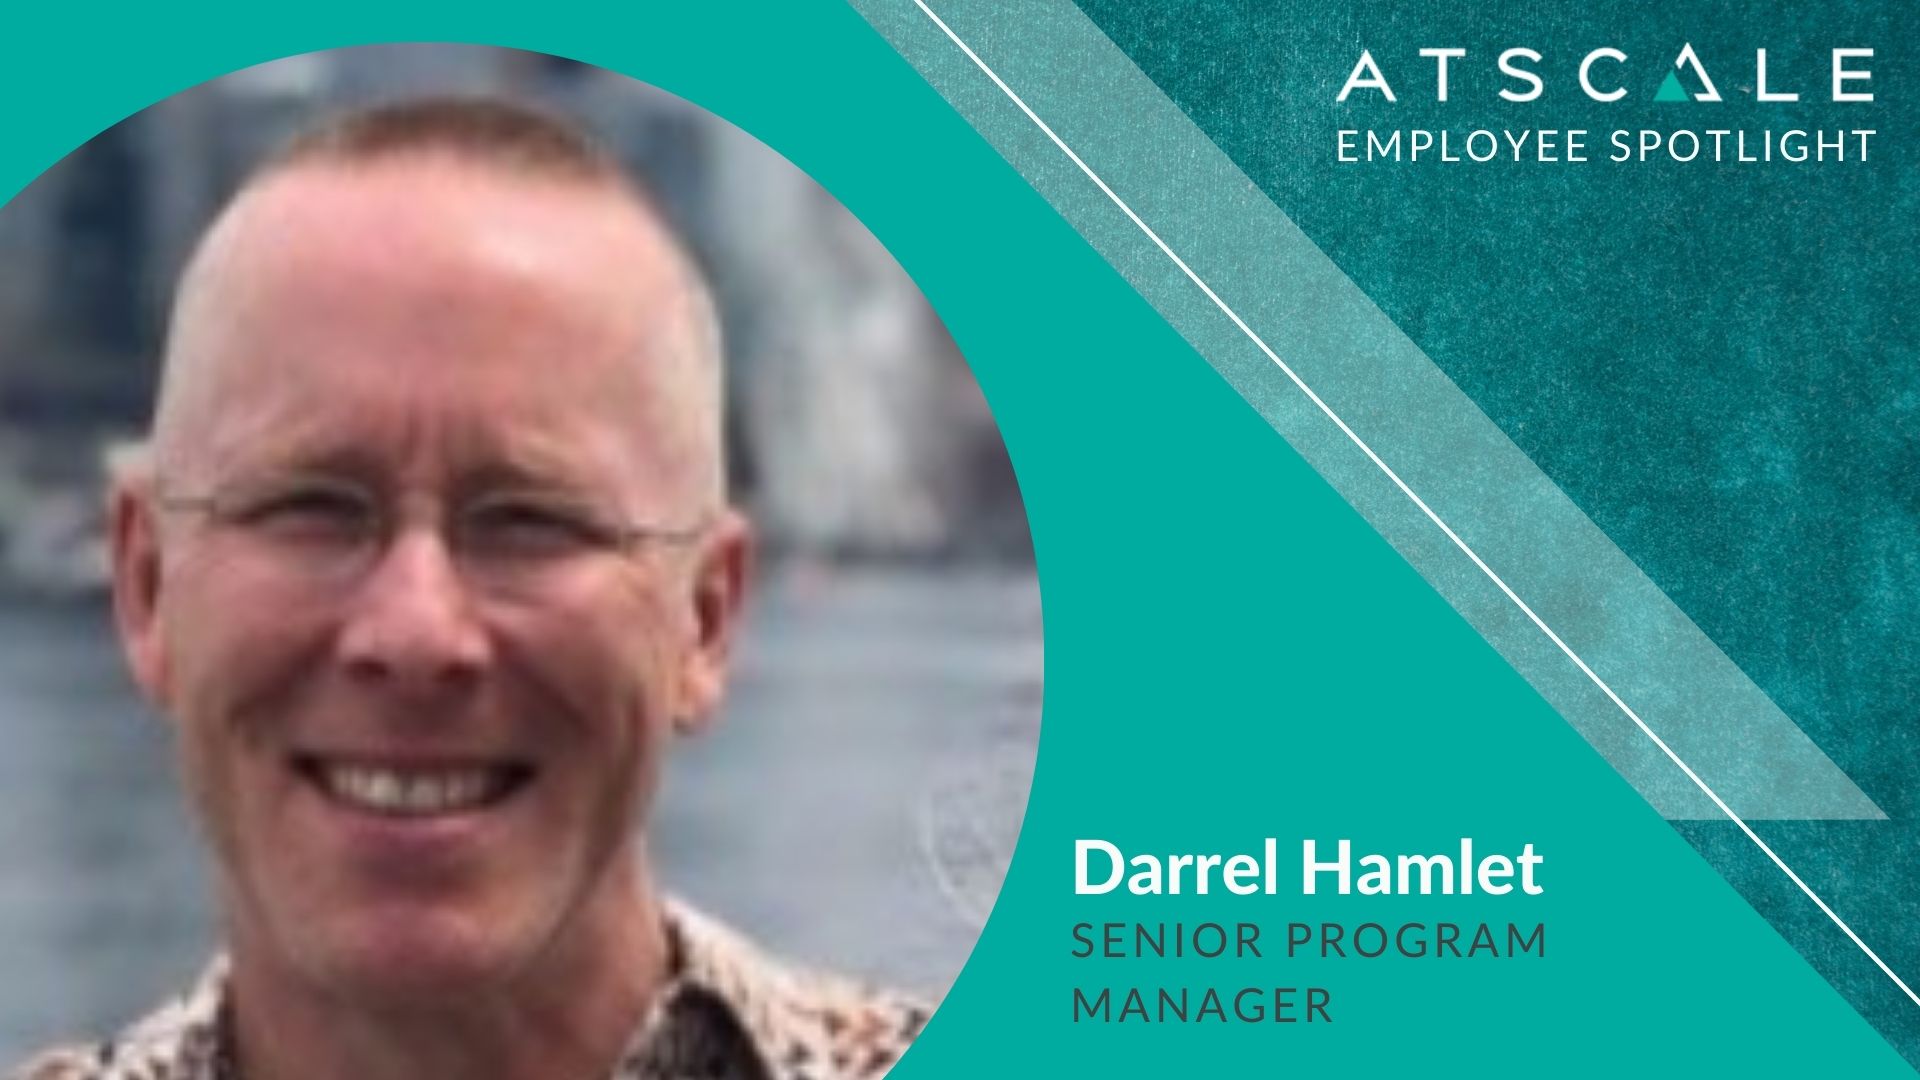 Employee Spotlight: Darrel Hamlet